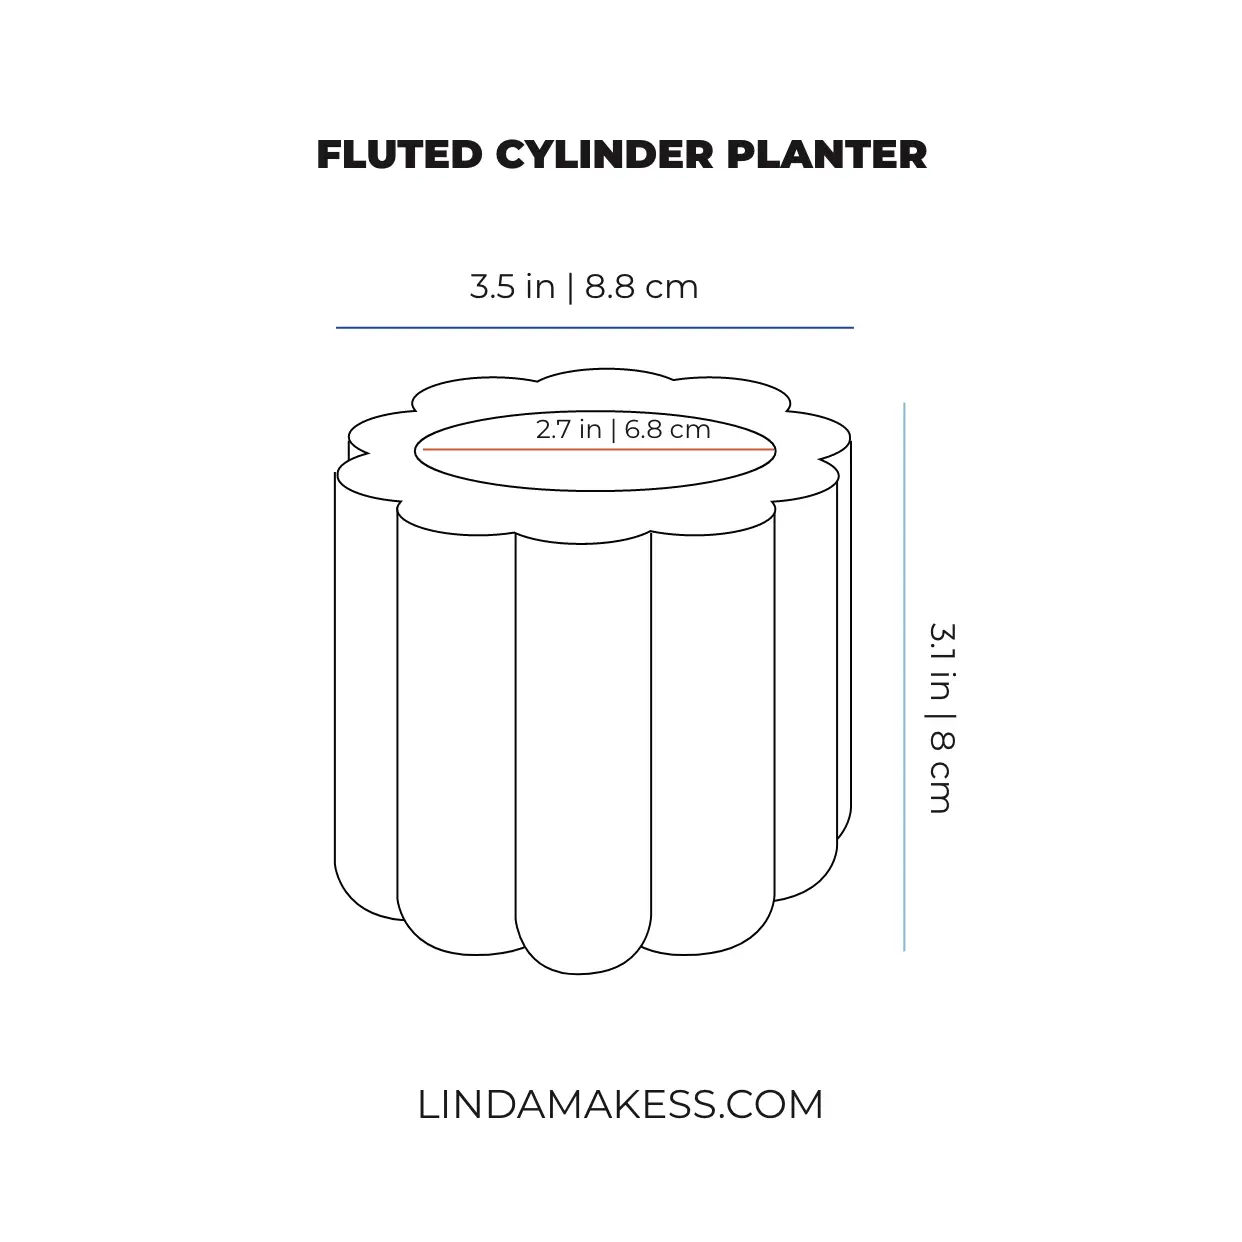 Fluted Cylinder Planter